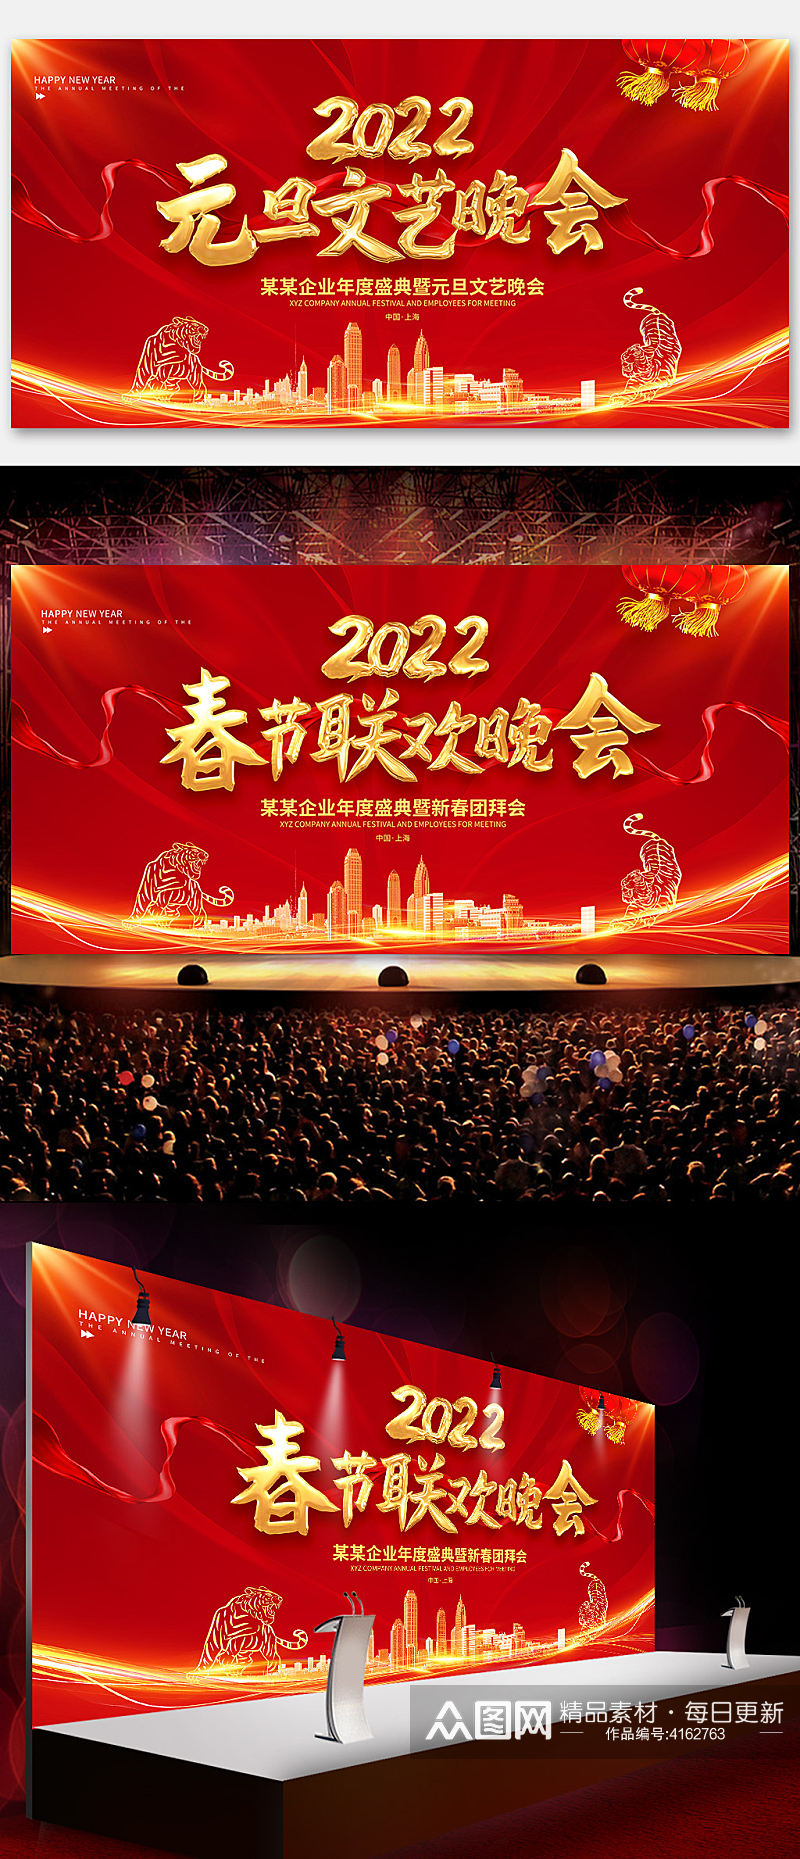 喜庆2022虎年元旦春节联欢晚会舞台背景素材